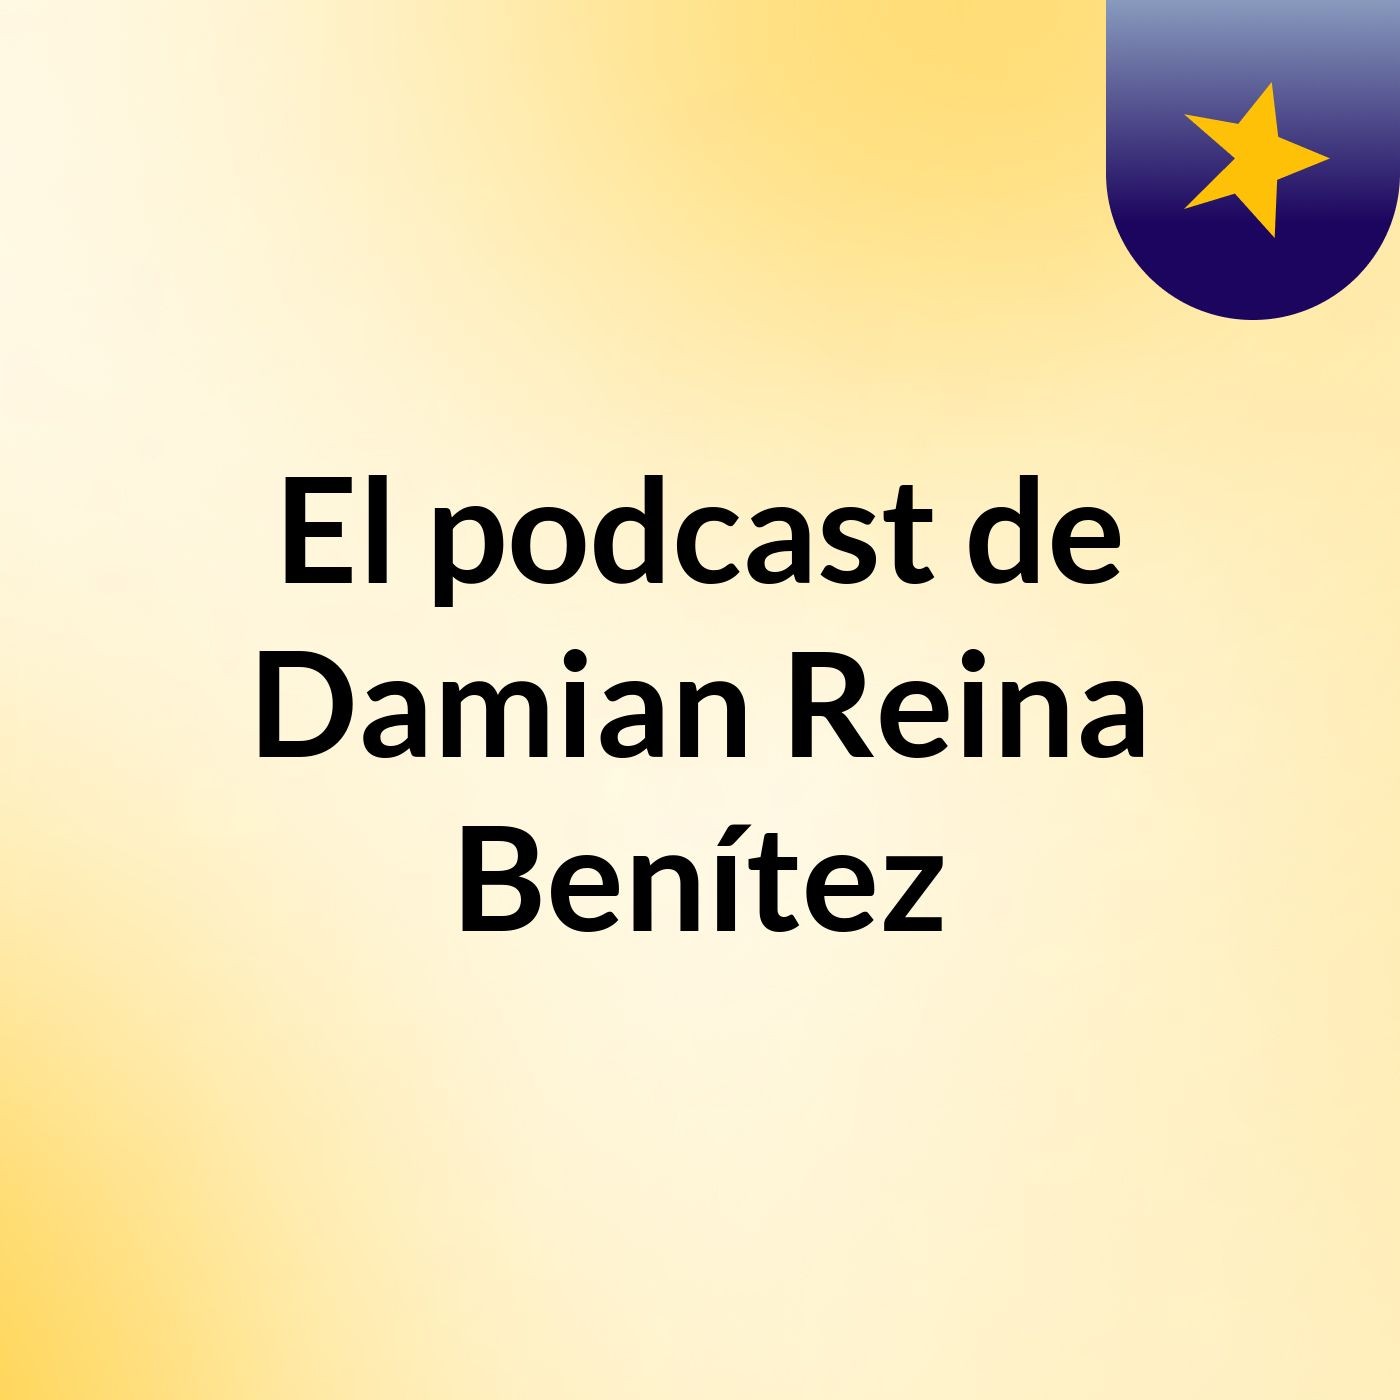 El podcast de Damian Reina Benítez